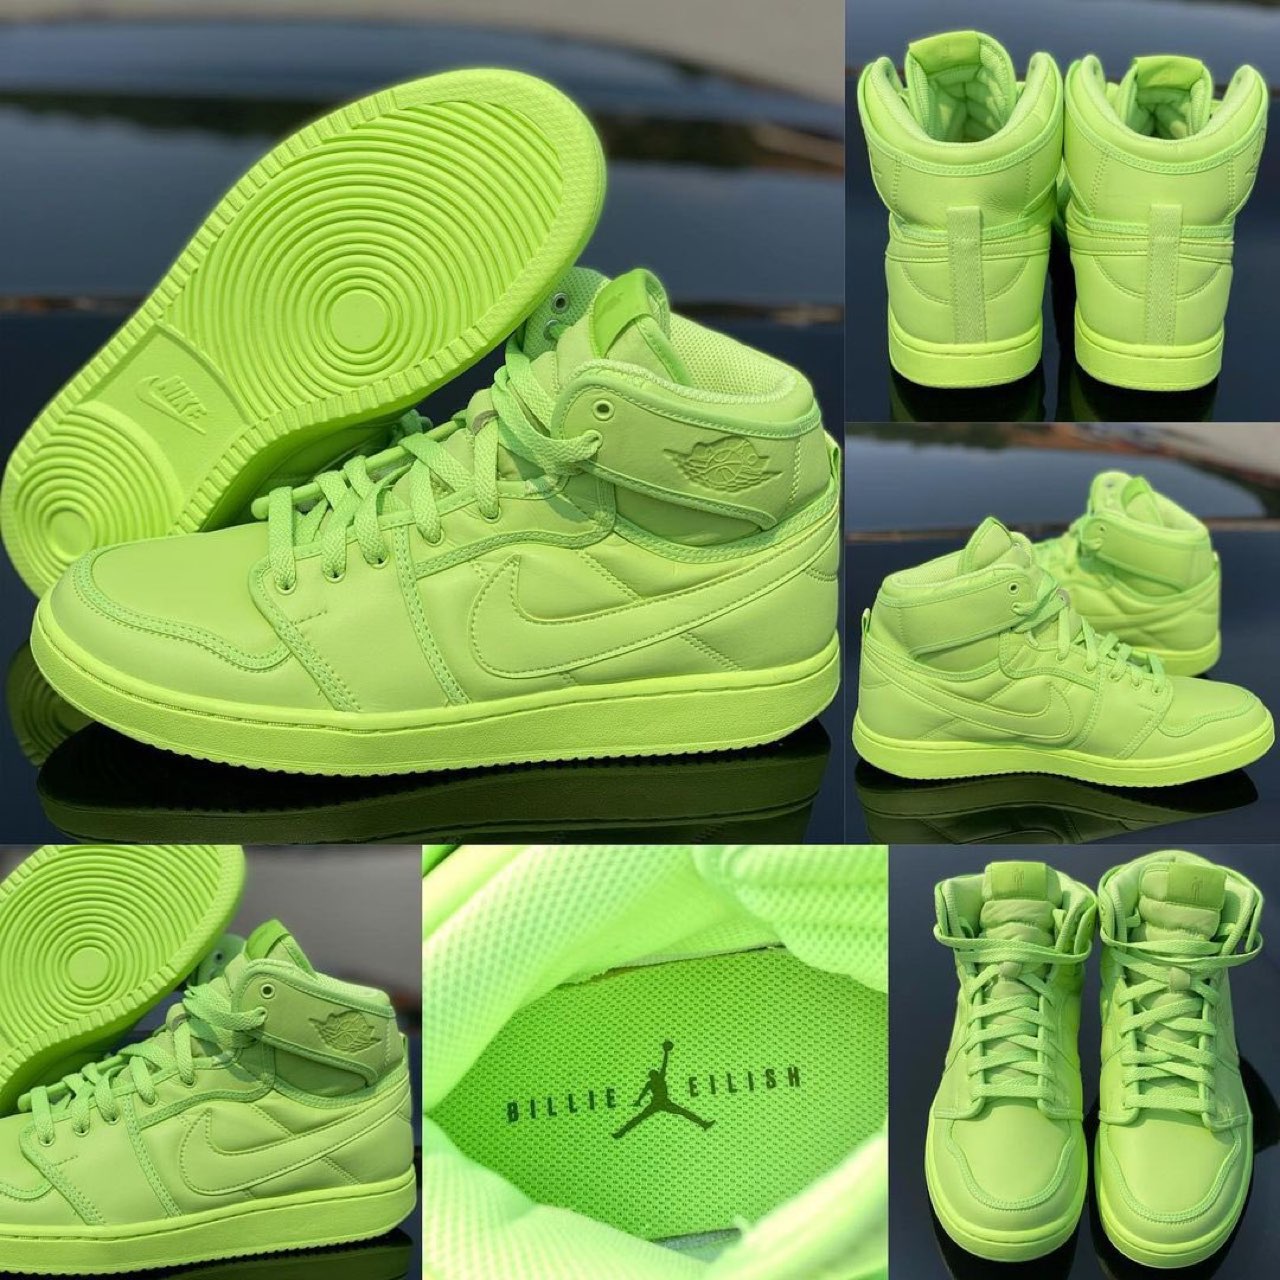 Billie Eilish × Nike】Air Jordan 1 KO SP “Ghost Green”が海外9月27 